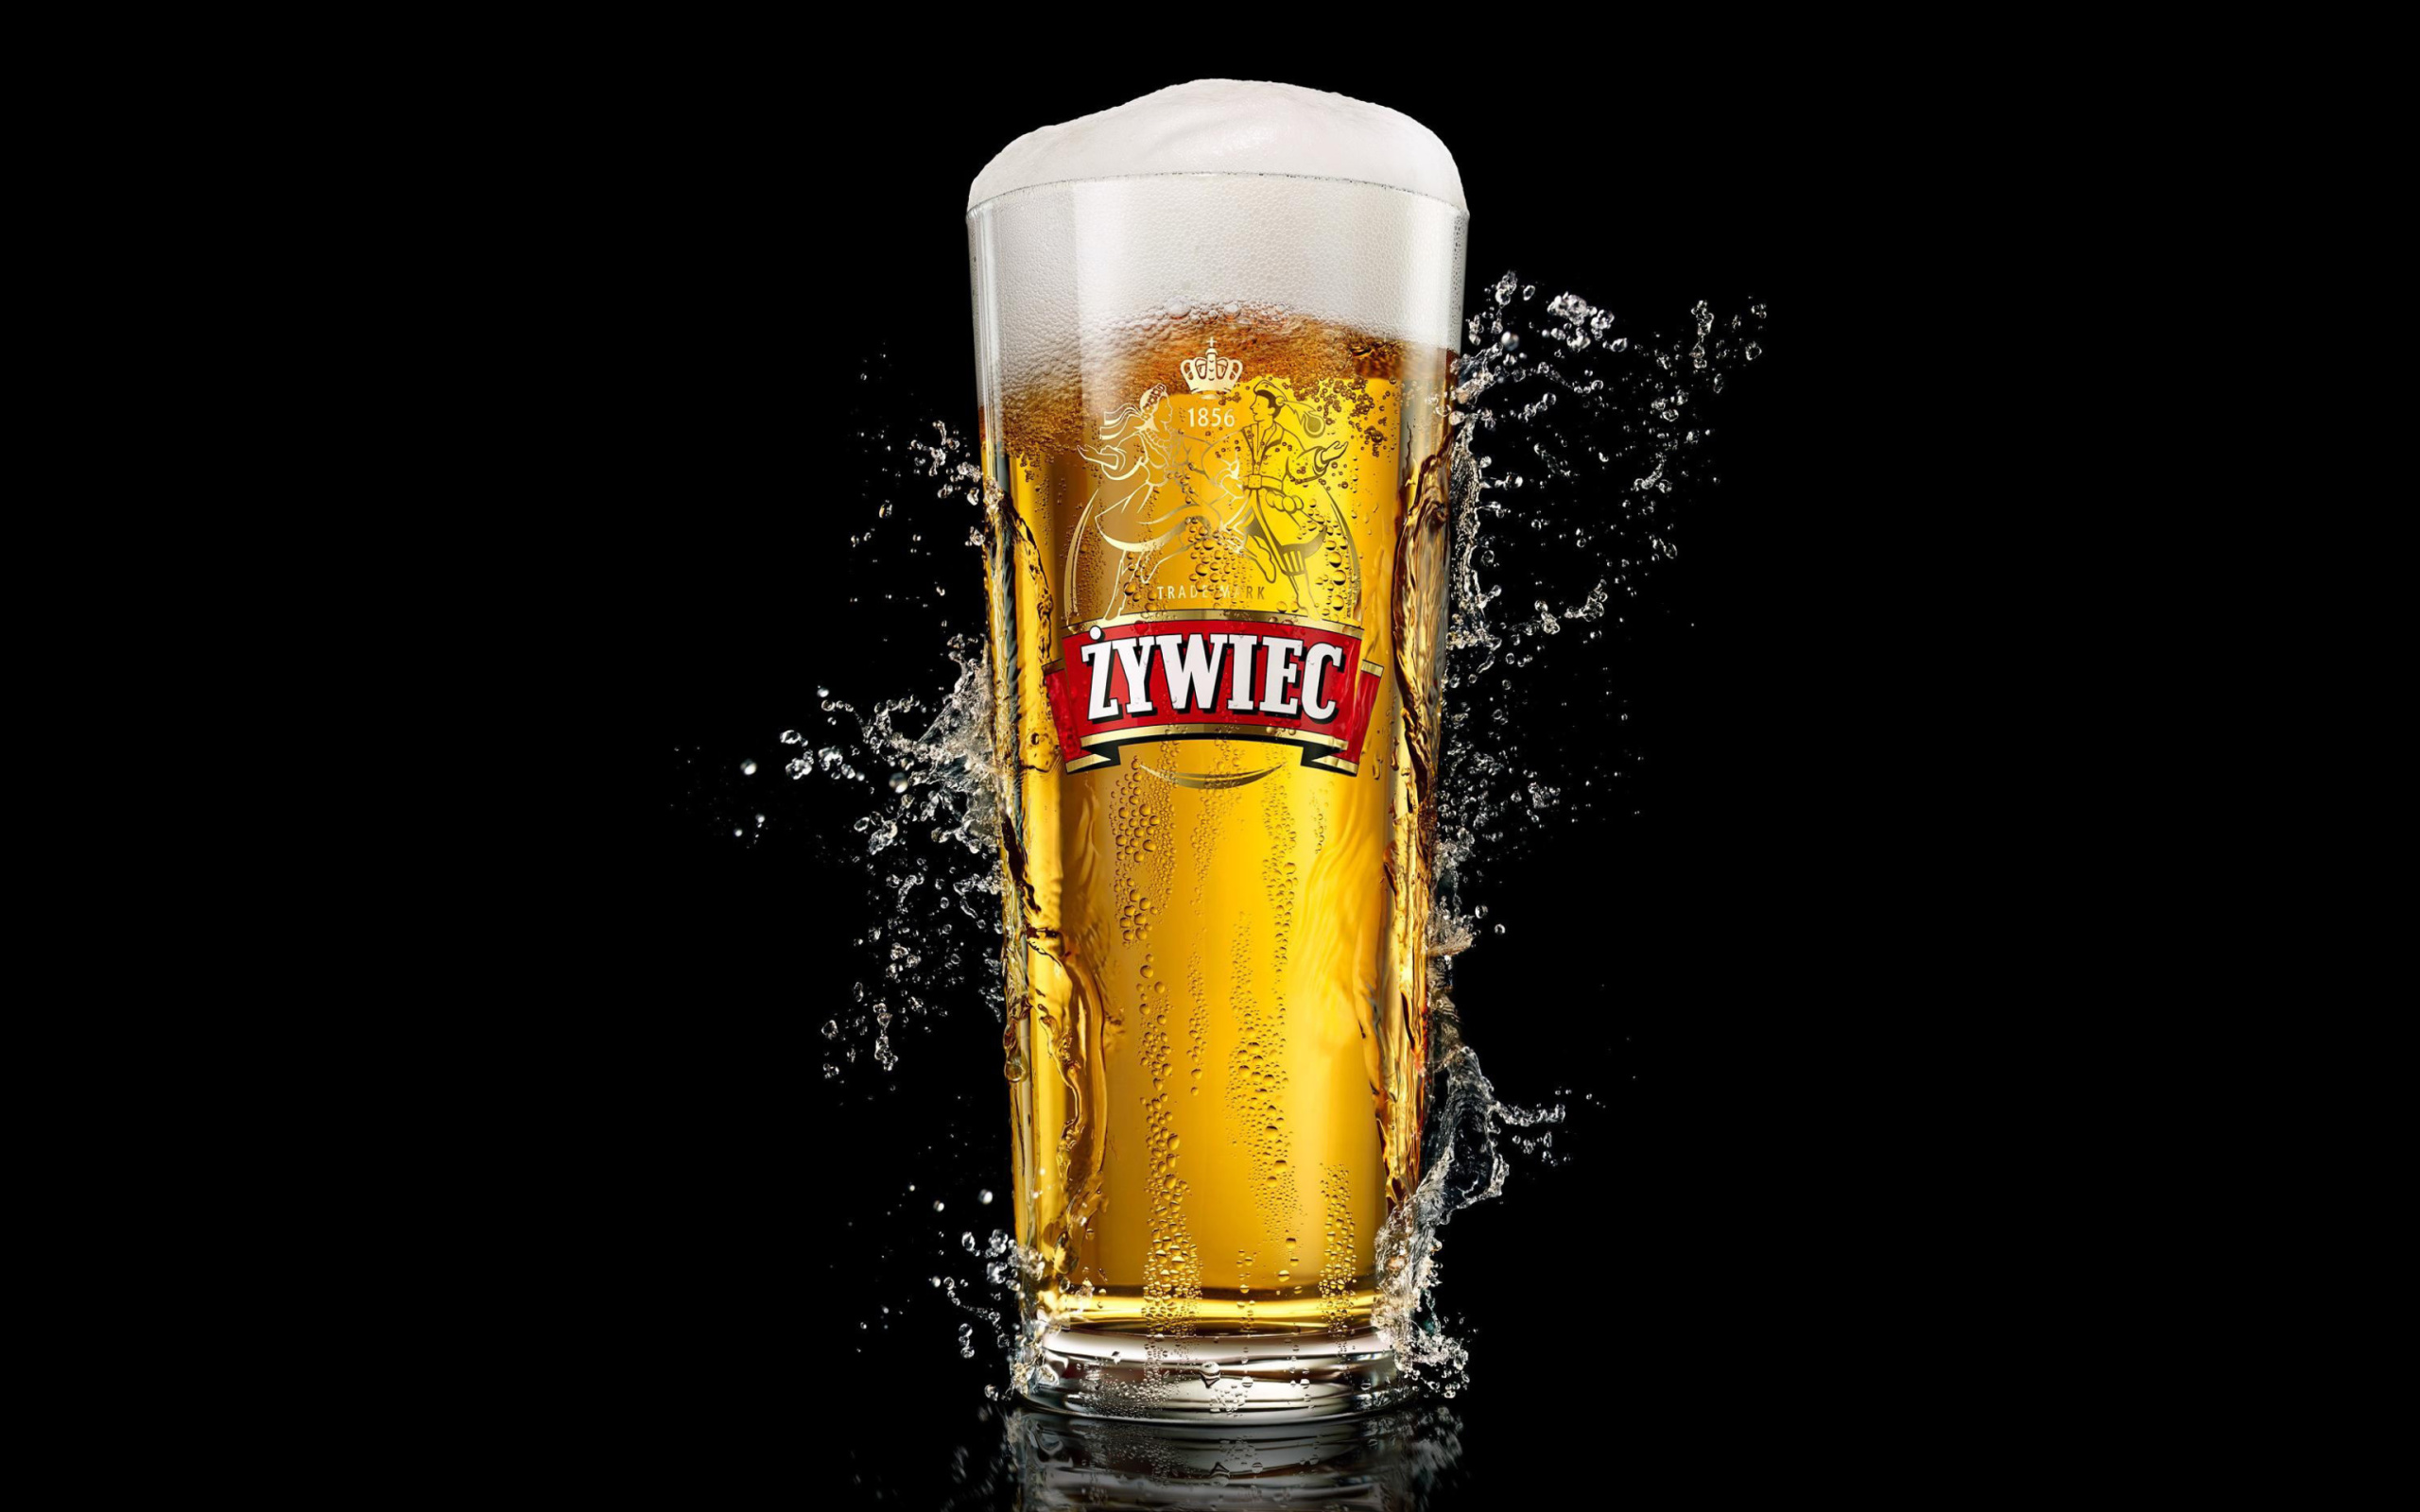 Das Zywiec Beer Wallpaper 2560x1600